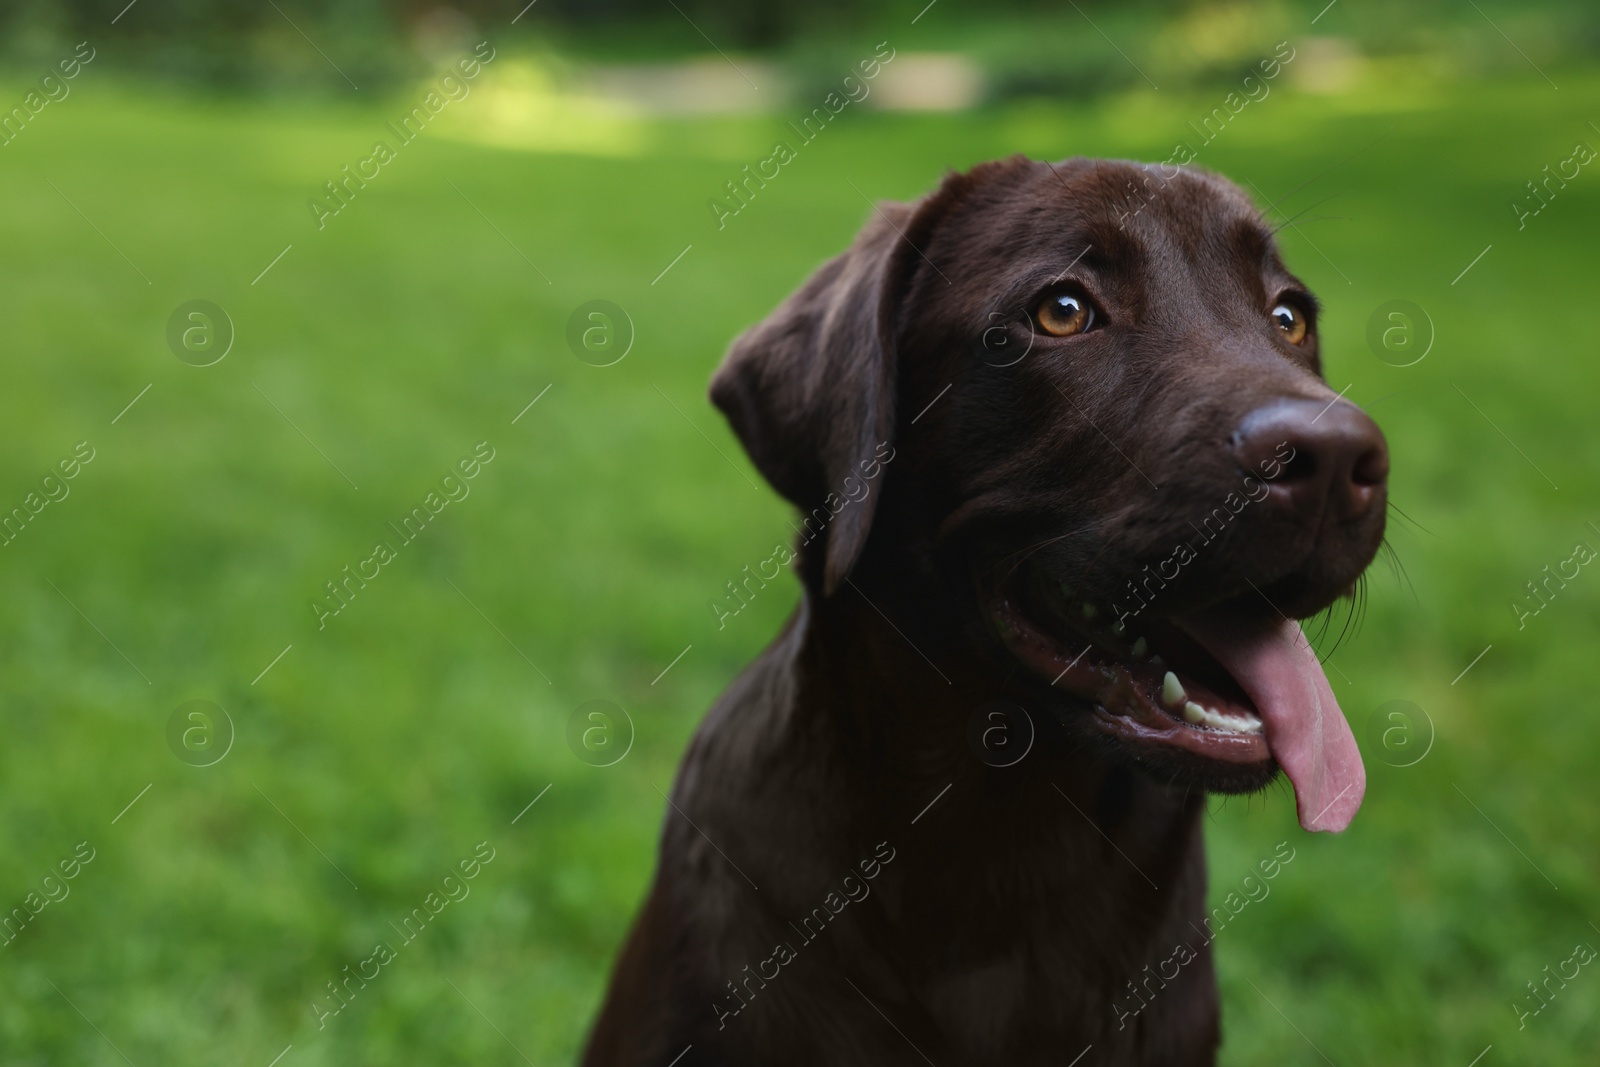 Photo of Adorable Labrador Retriever dog in park, closeup. Space for text